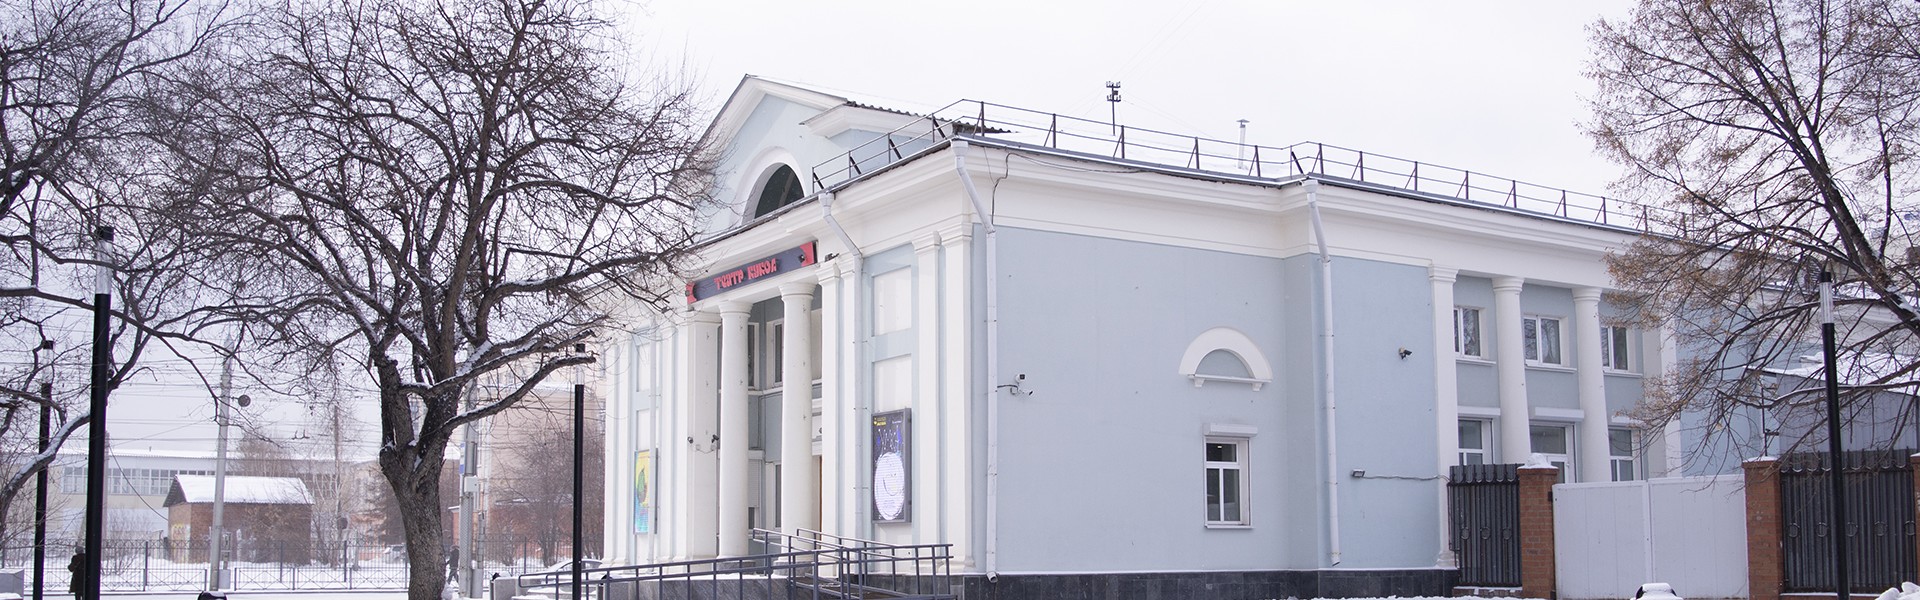 Театр кукол в Иркутске растет и нуждается в новом здании